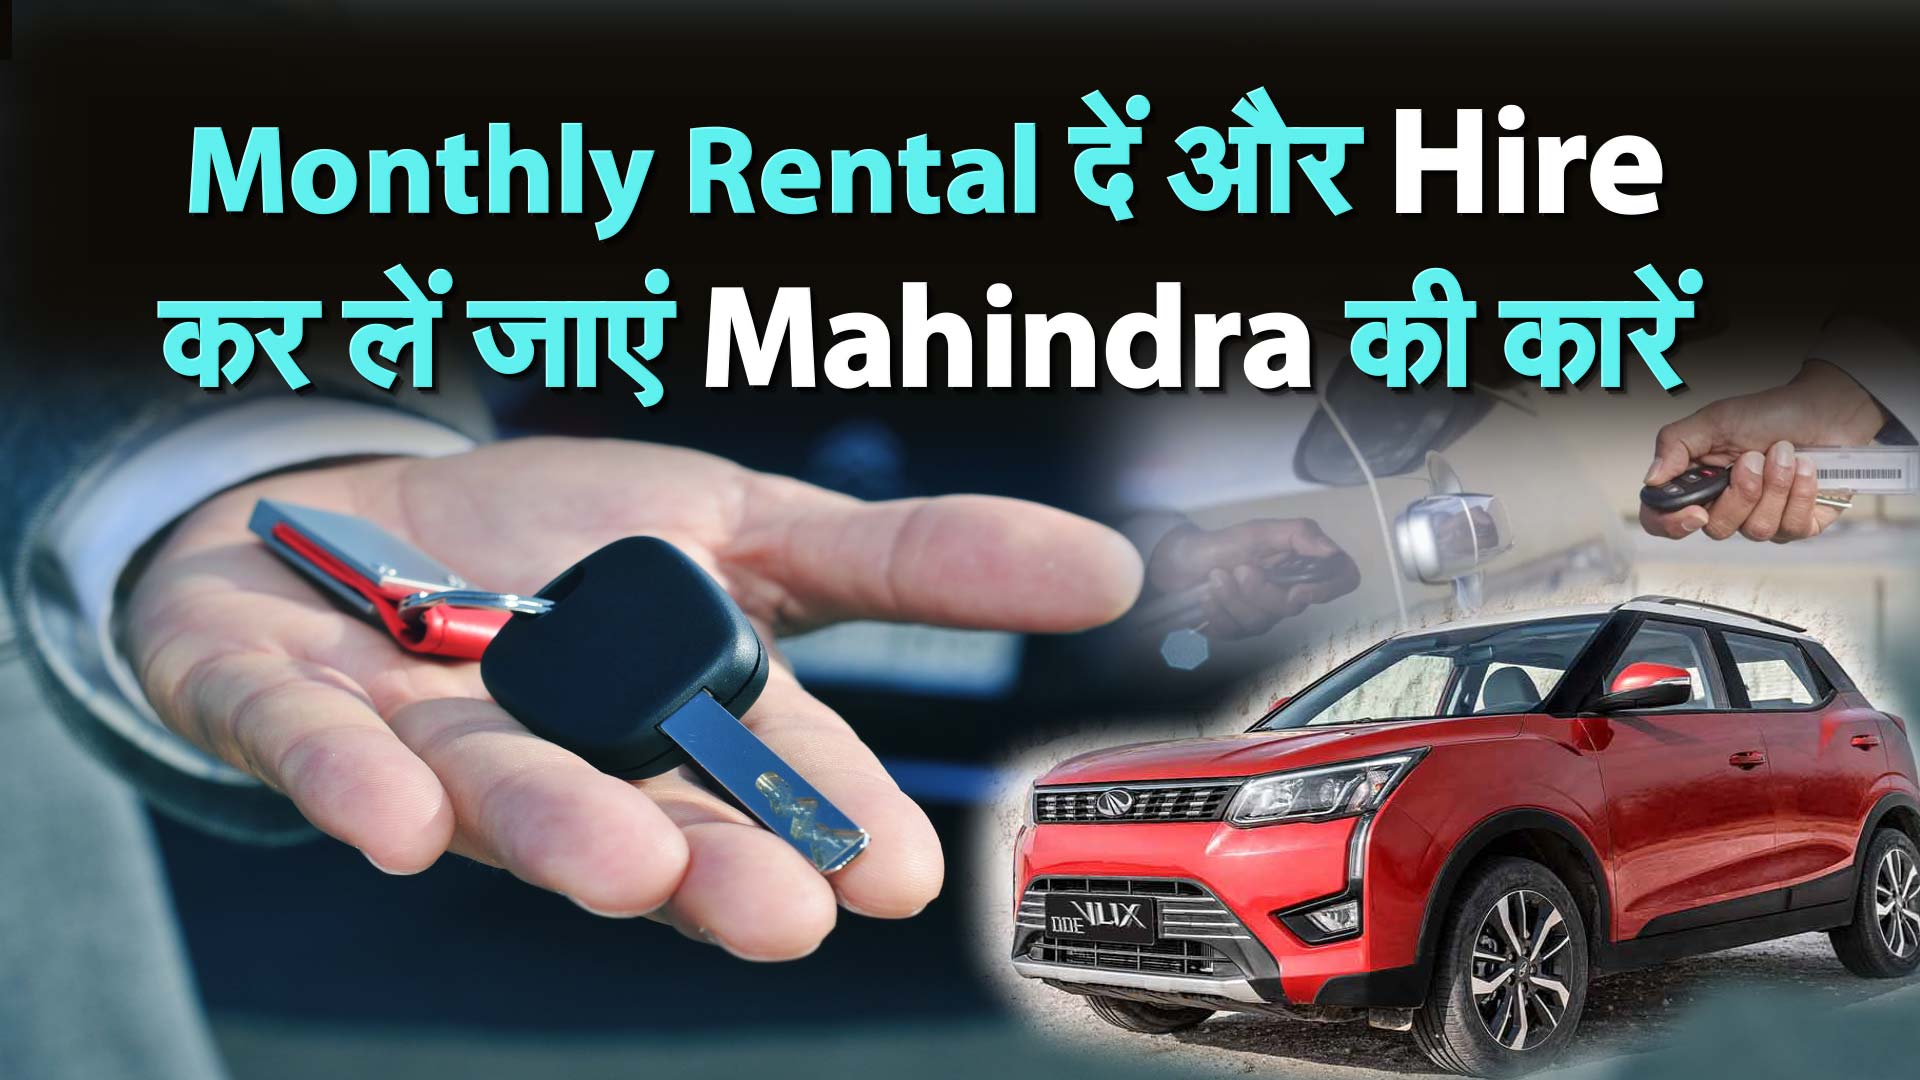 Monthly Rental दें और Hire कर लें जाएं Mahindra की कारें